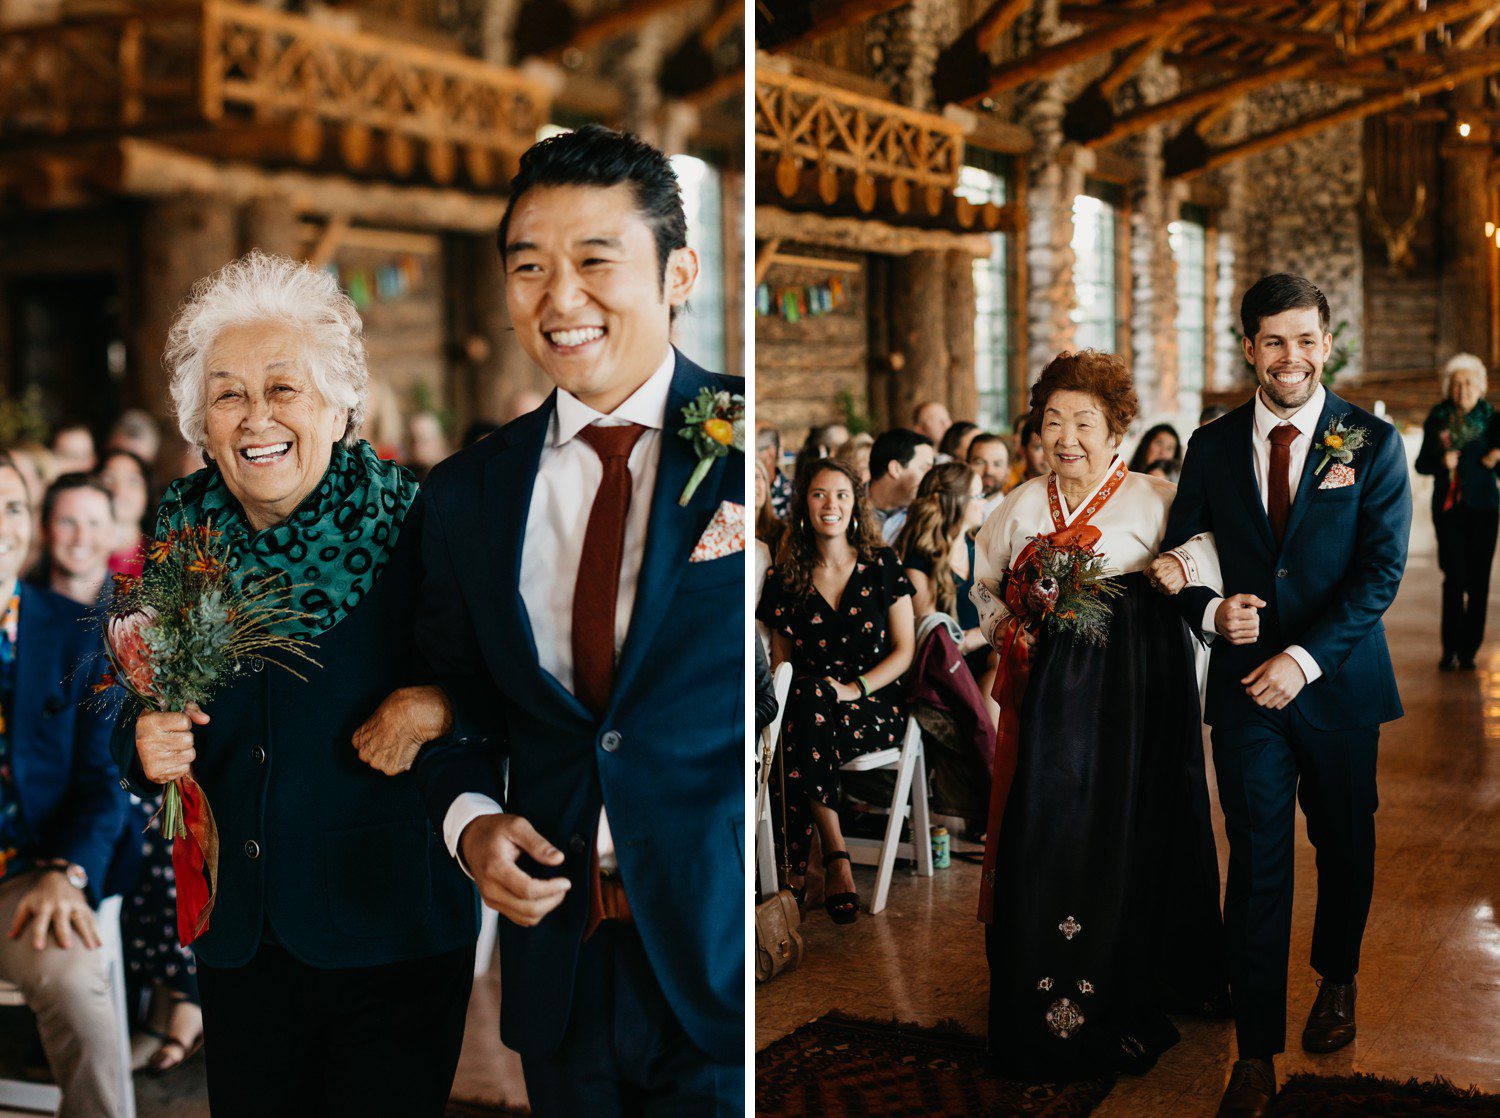 Grandmas as Bridesmaids